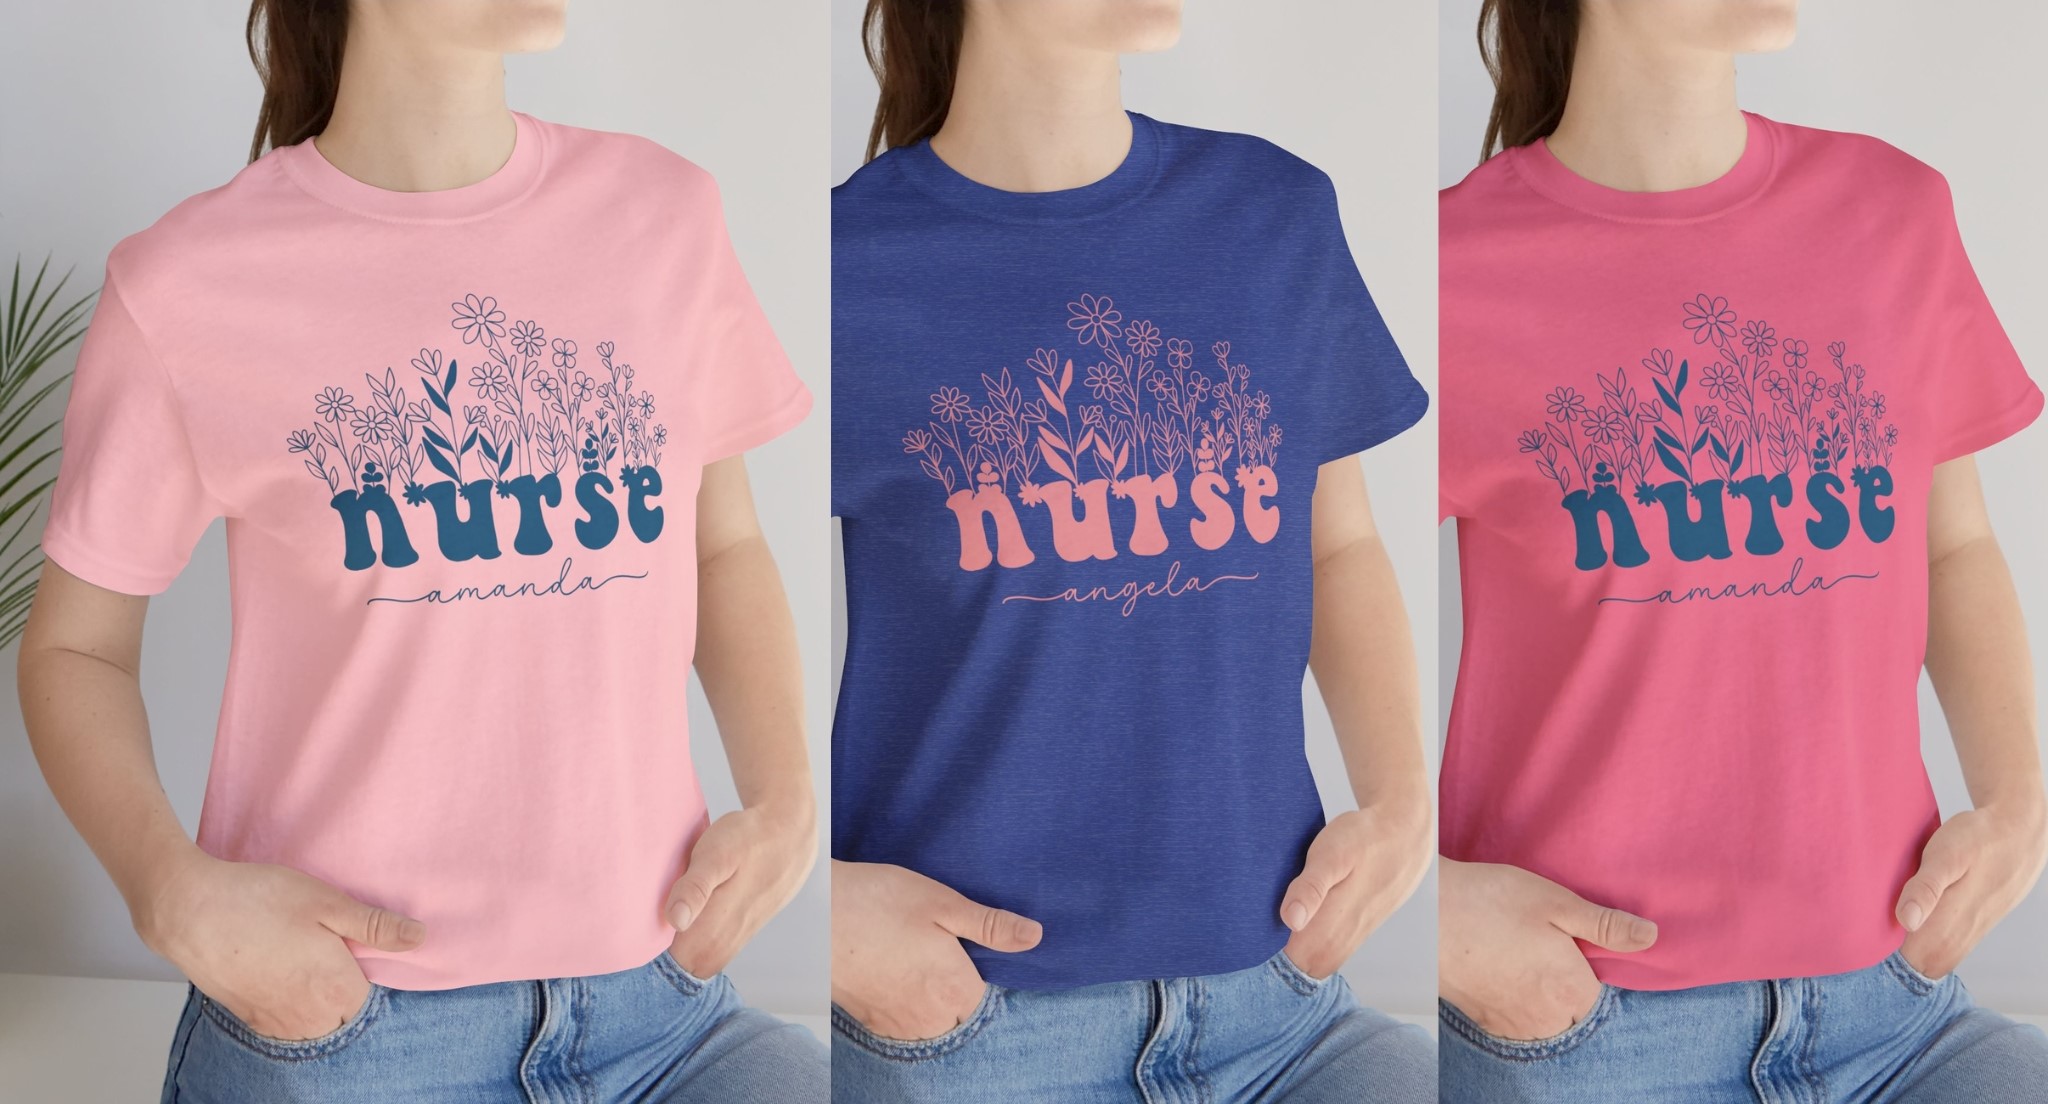 Nurse Wildflowers Shirt